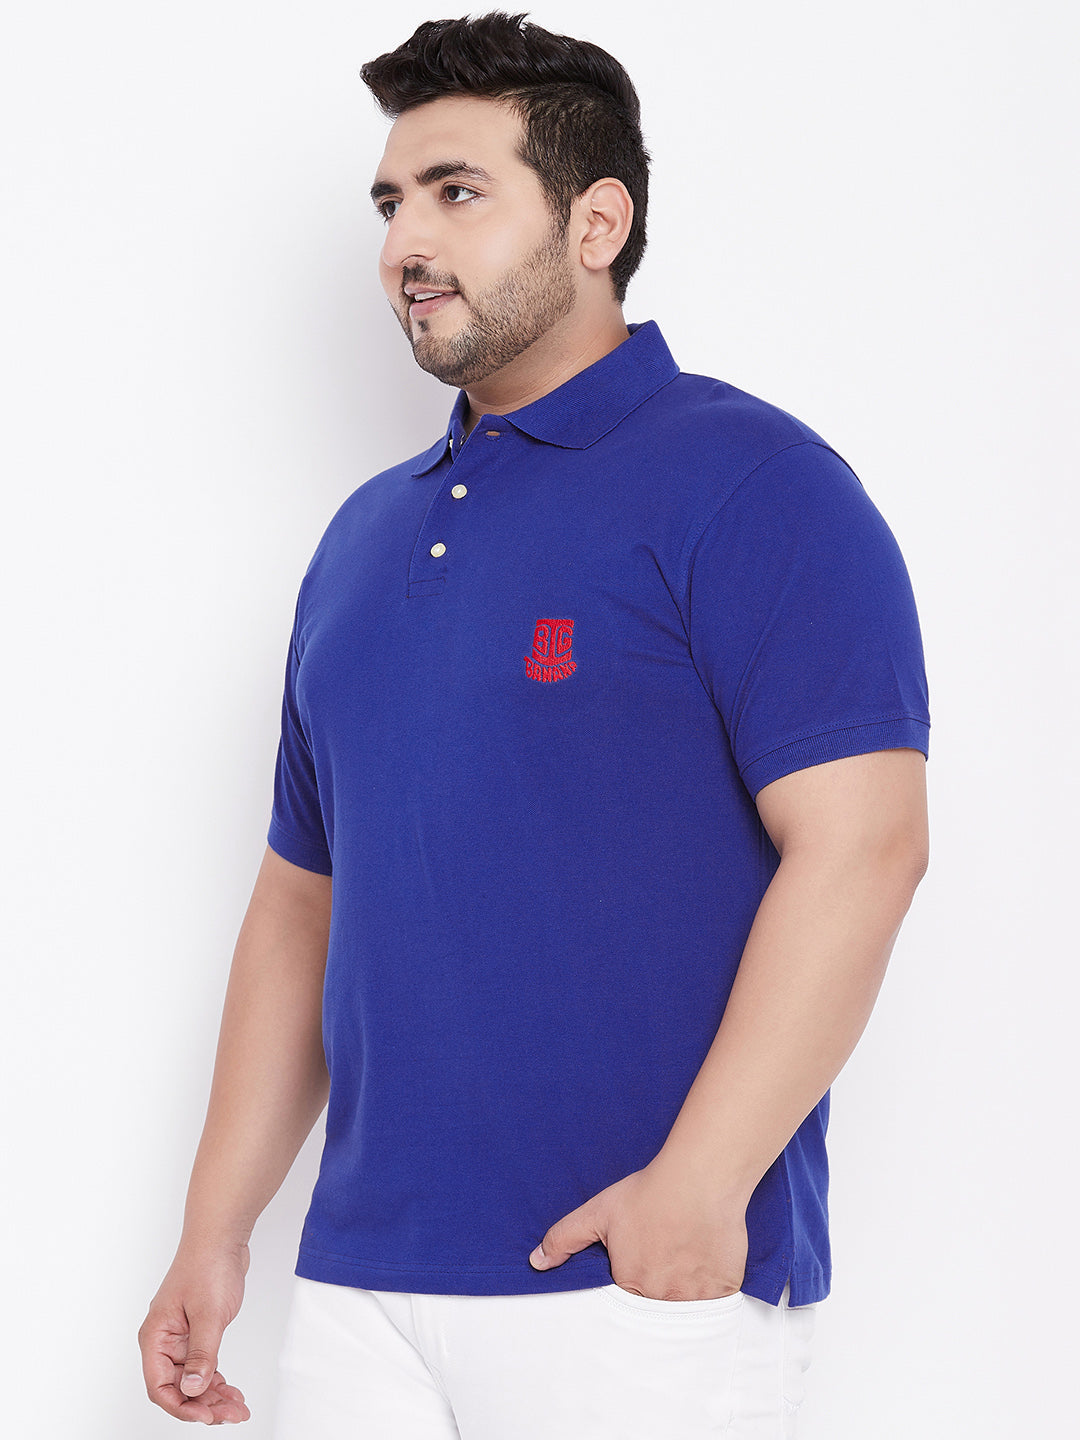 Download bigbanana TIM Royal Blue Polo T-Shirt | Bigbanana